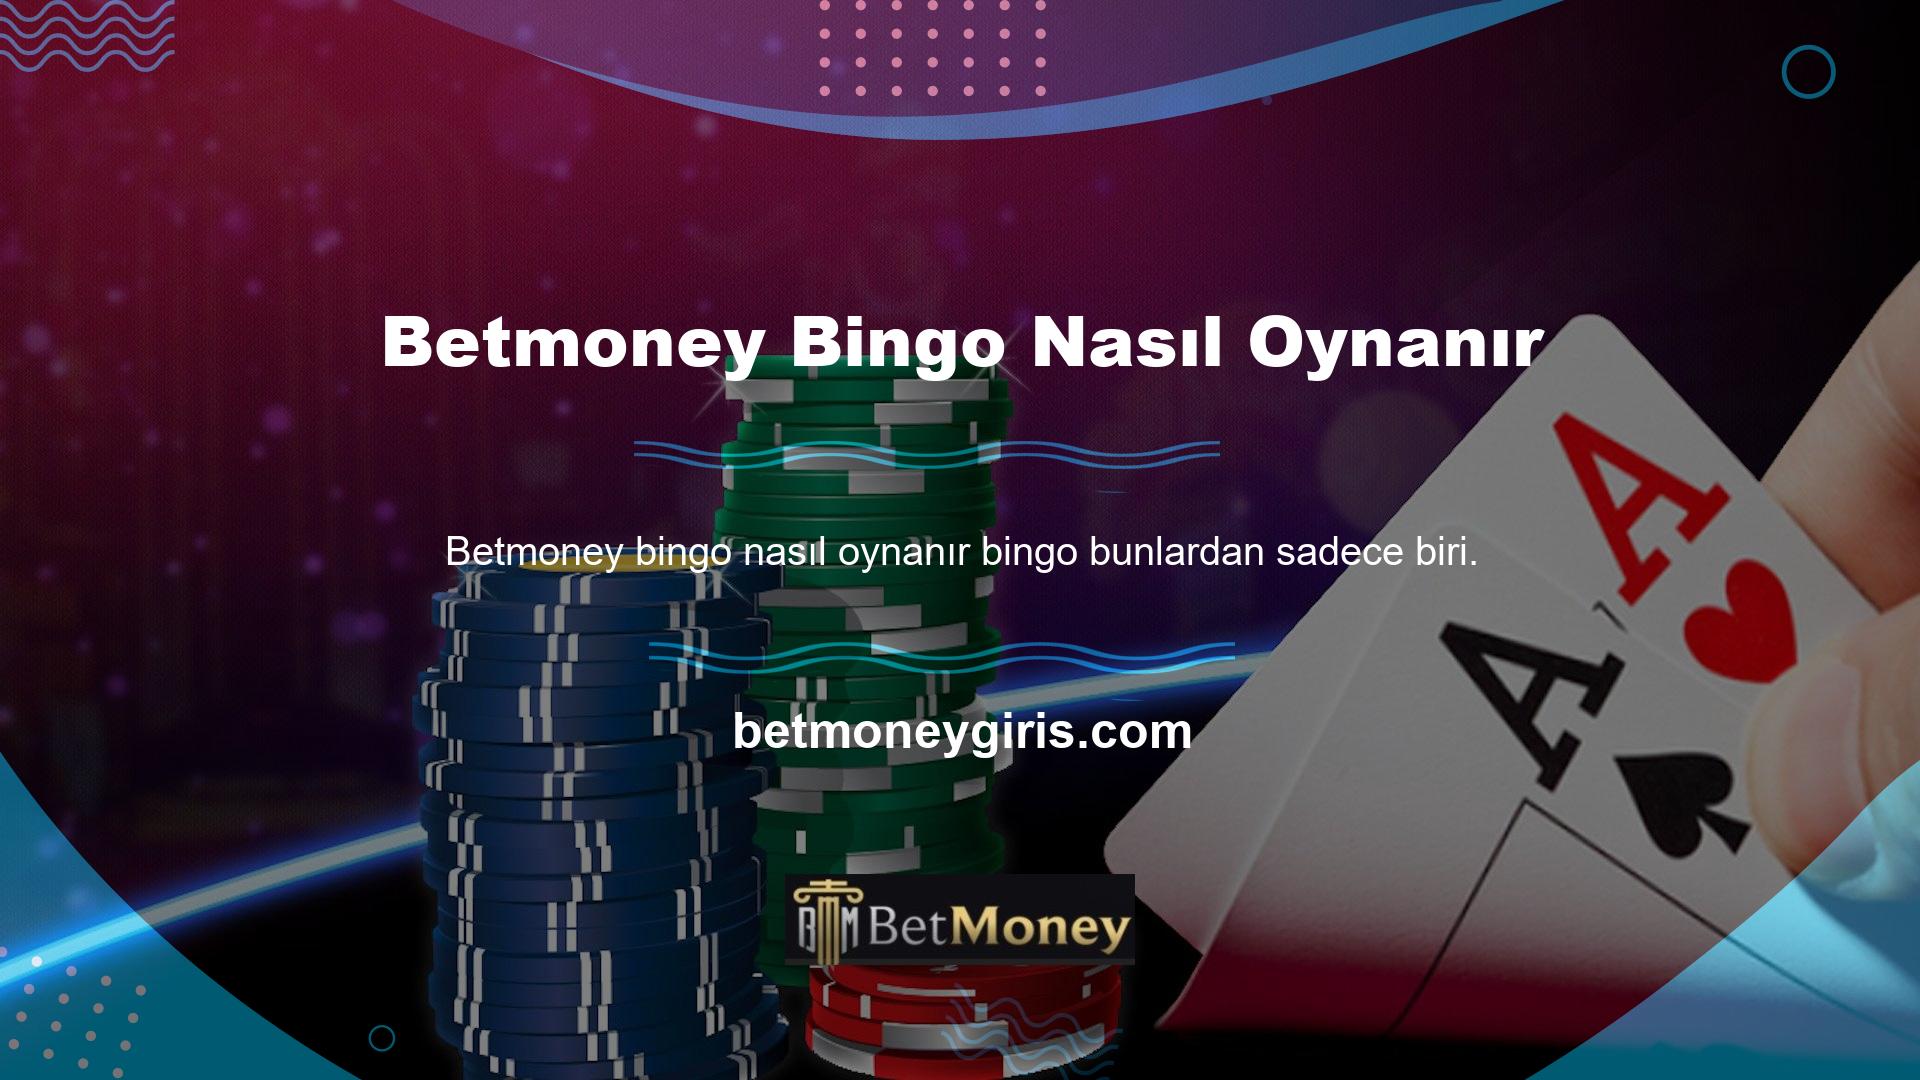 Betmoney Bingo oynayan üyeler bahis oynayabilir ve para kazanabilirler